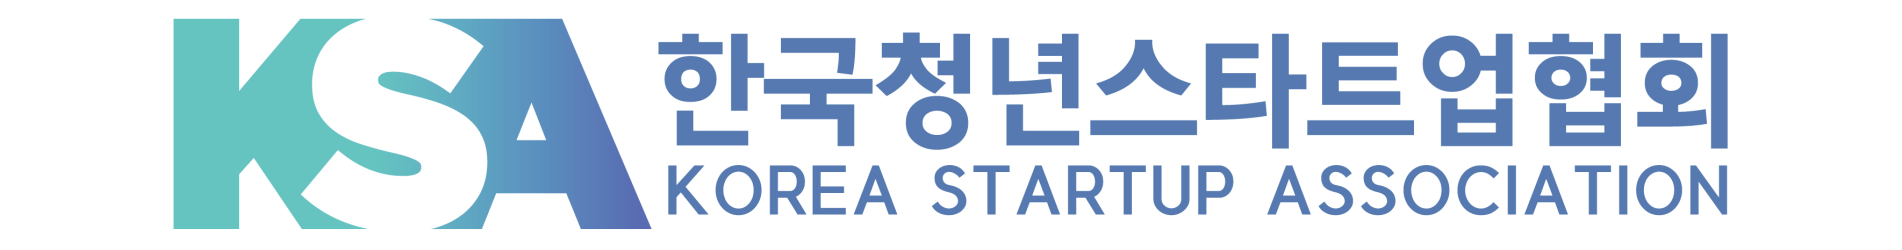 한국청년스타트업협회